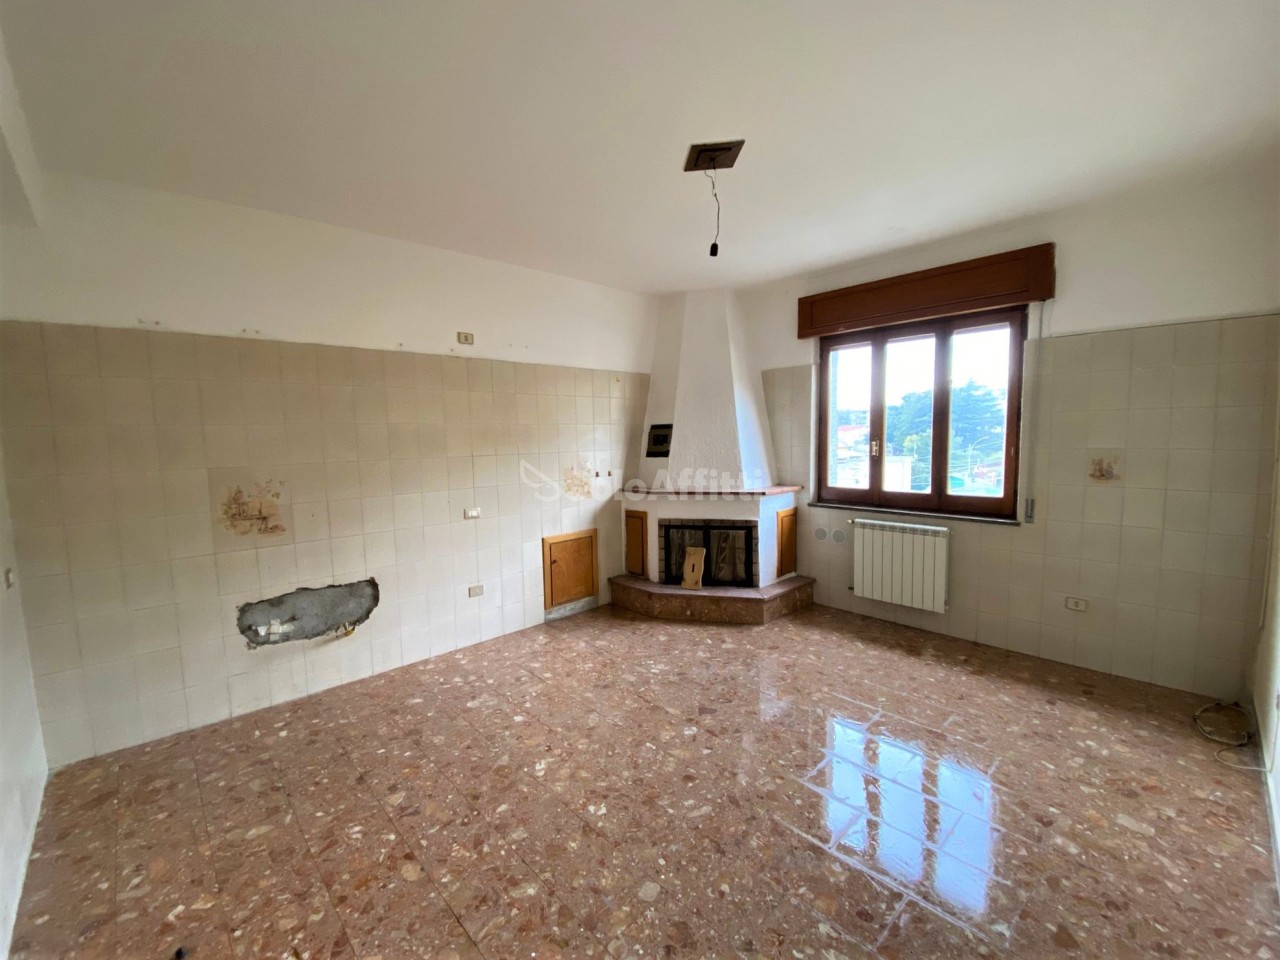 Appartamento in affitto a Simeri Crichi, 4 locali, prezzo € 300 | PortaleAgenzieImmobiliari.it